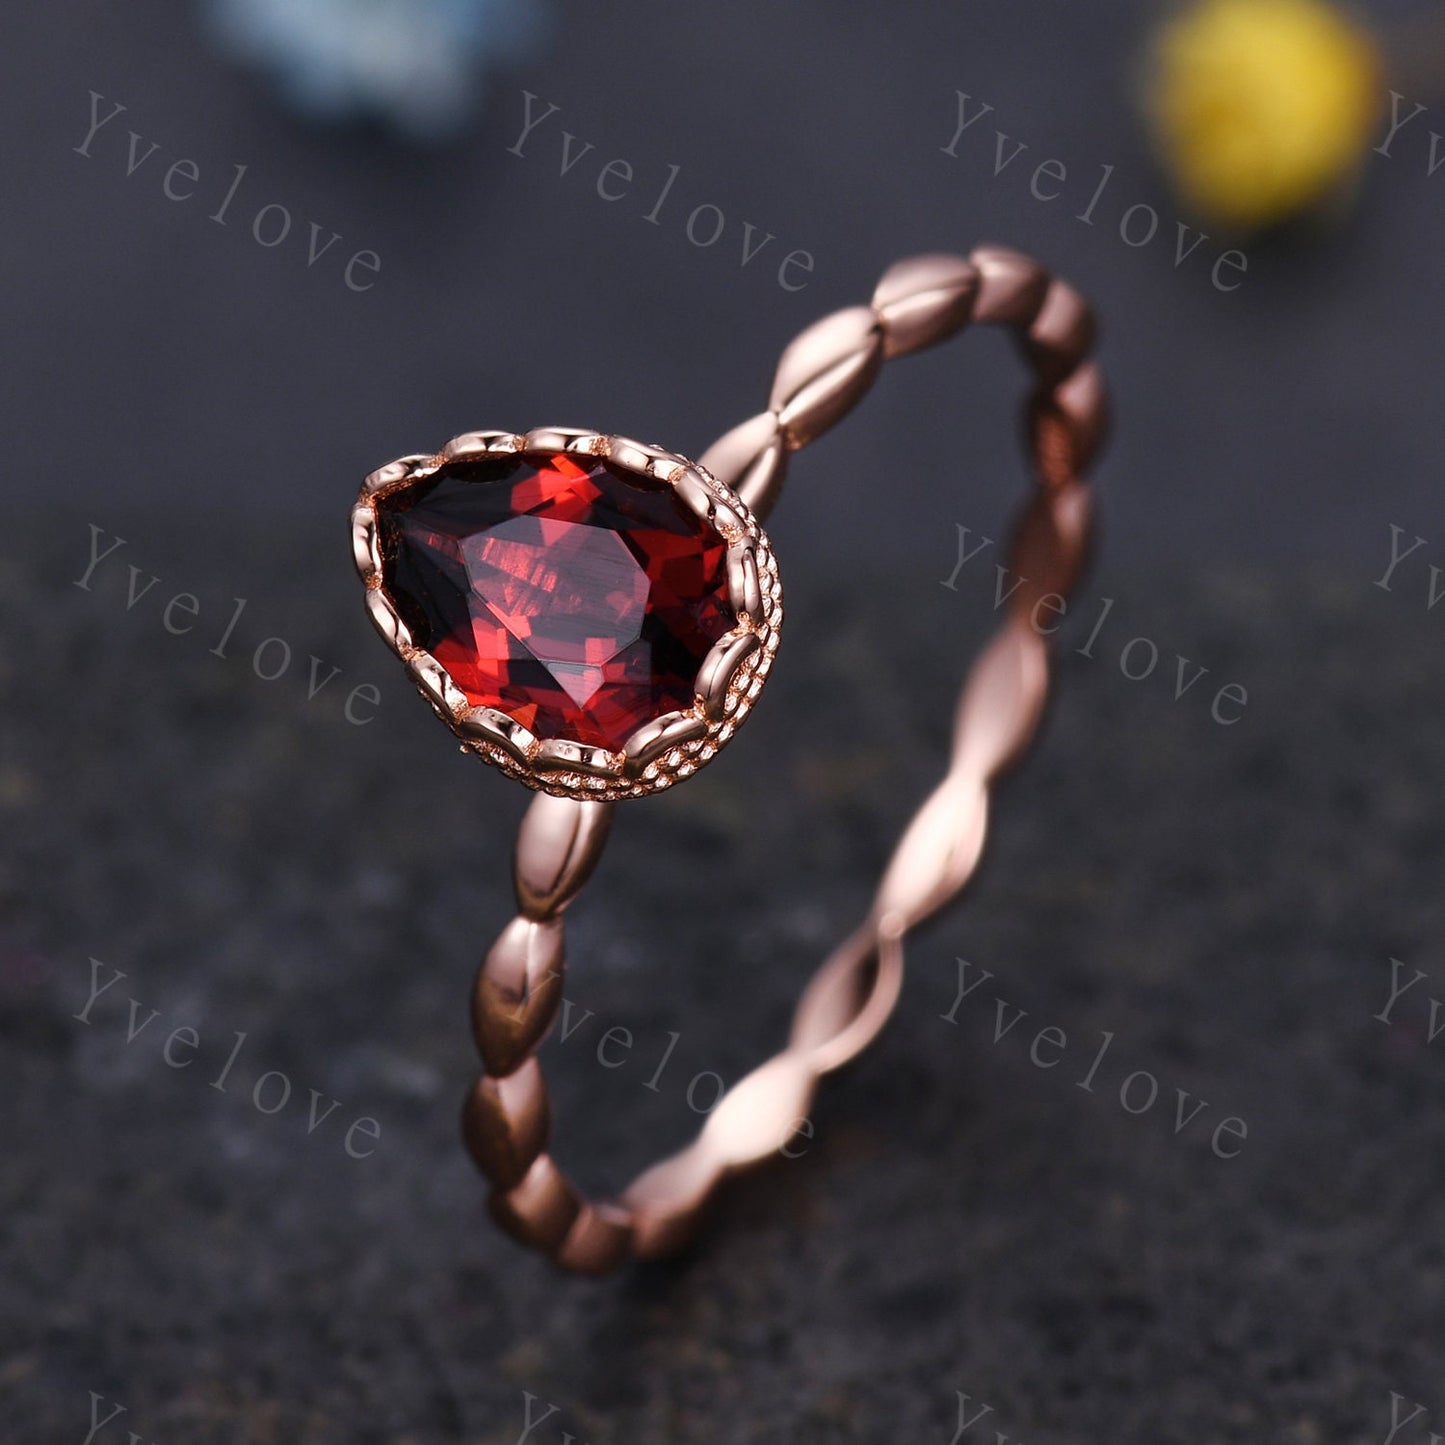 Vintage Pear Cut Red Garnet Engagement Ring Set Unique Leaf Twisted Design Ring Art Deco 14K Rose Gold Open Gap Band Bridal Set Customized